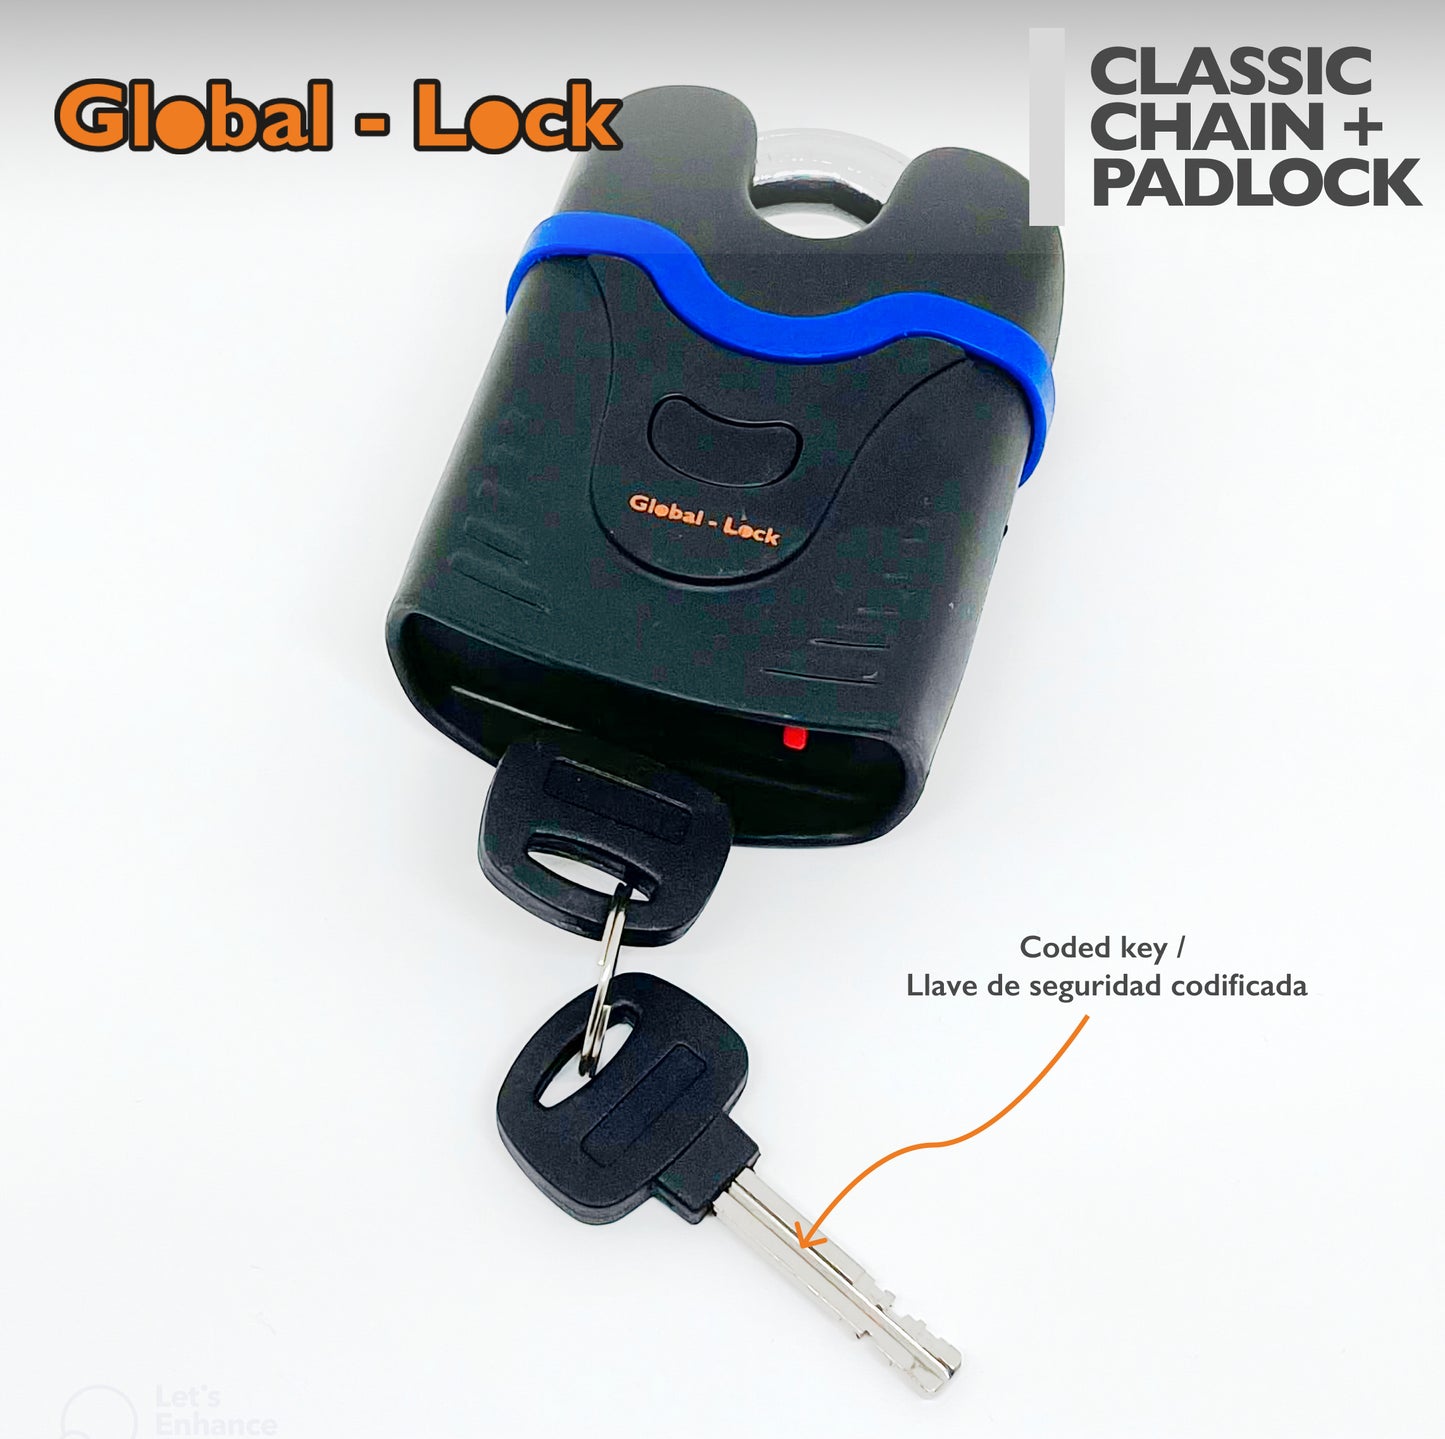 Global-Lock CLASSIC chain + padlock kit